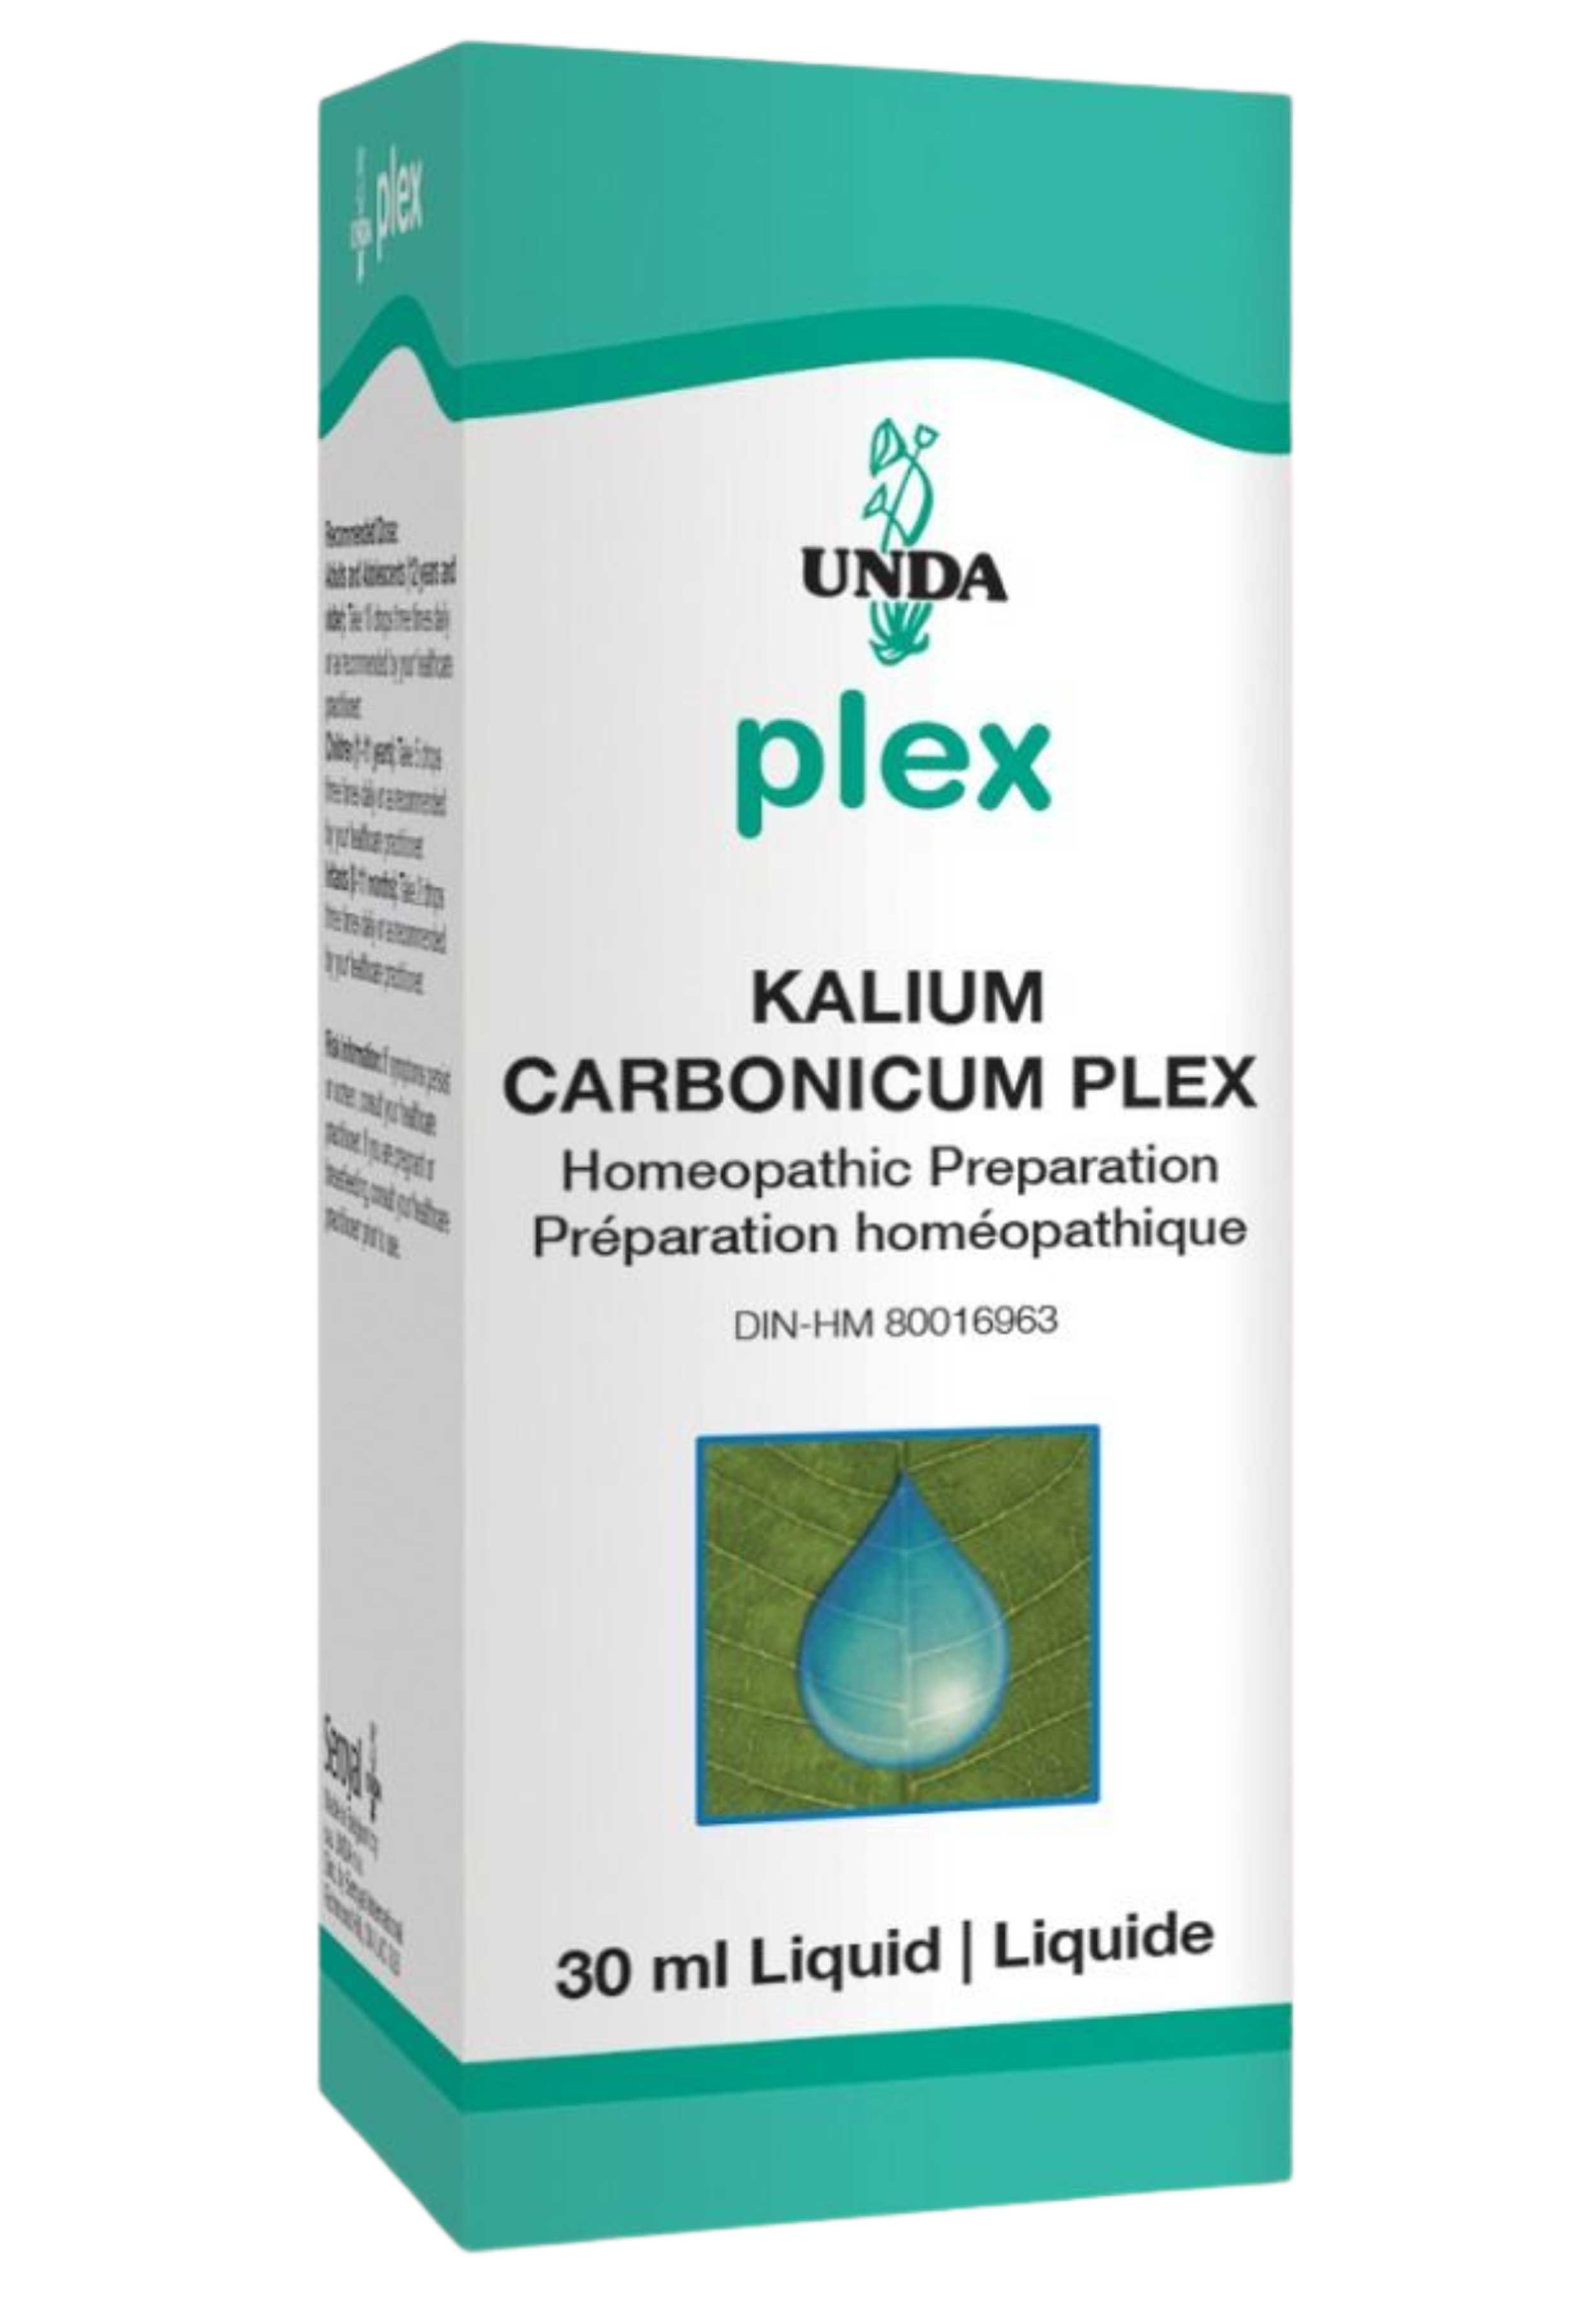 UNDA Kalium Carbonicum Plex